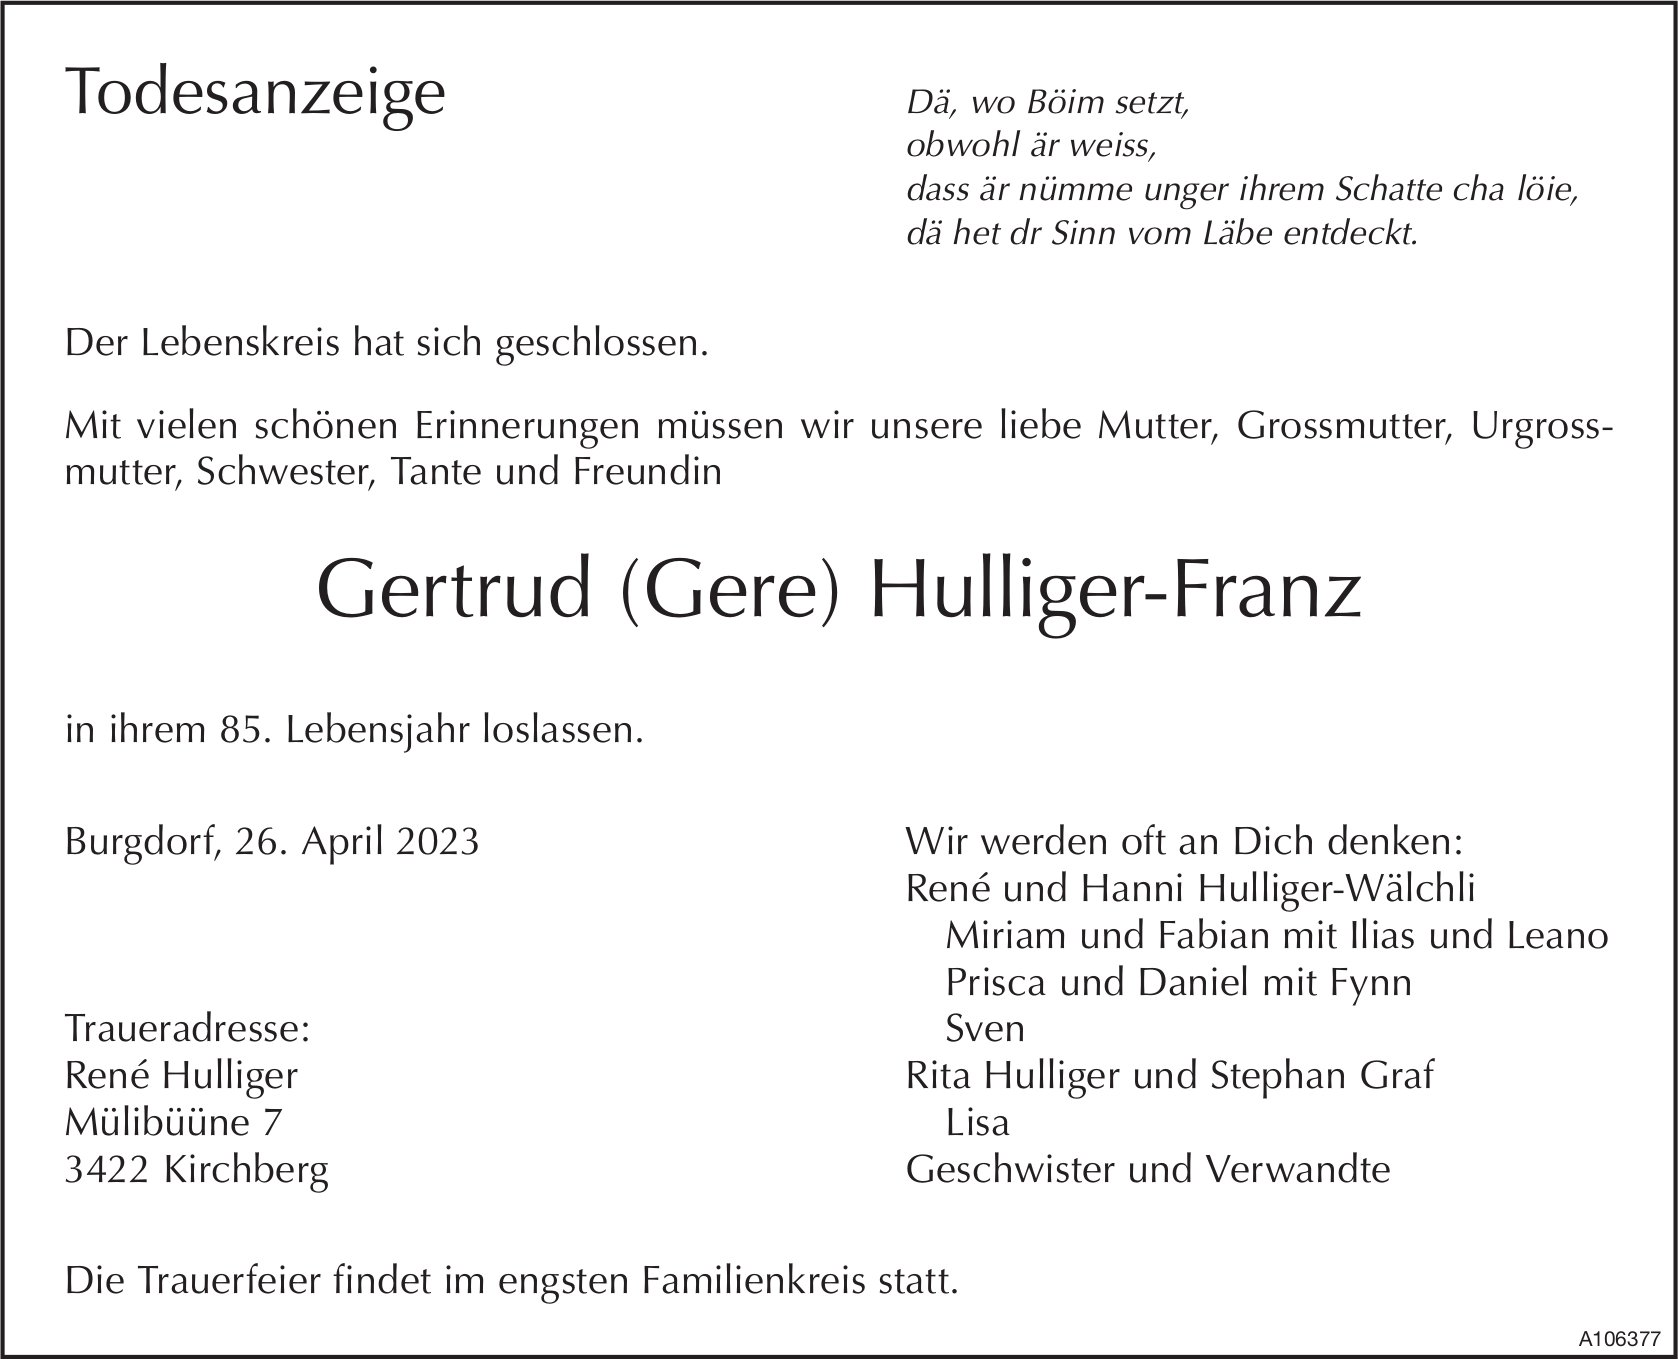 Gertrud (Gere) Hulliger-Franz, April 2023 / TA